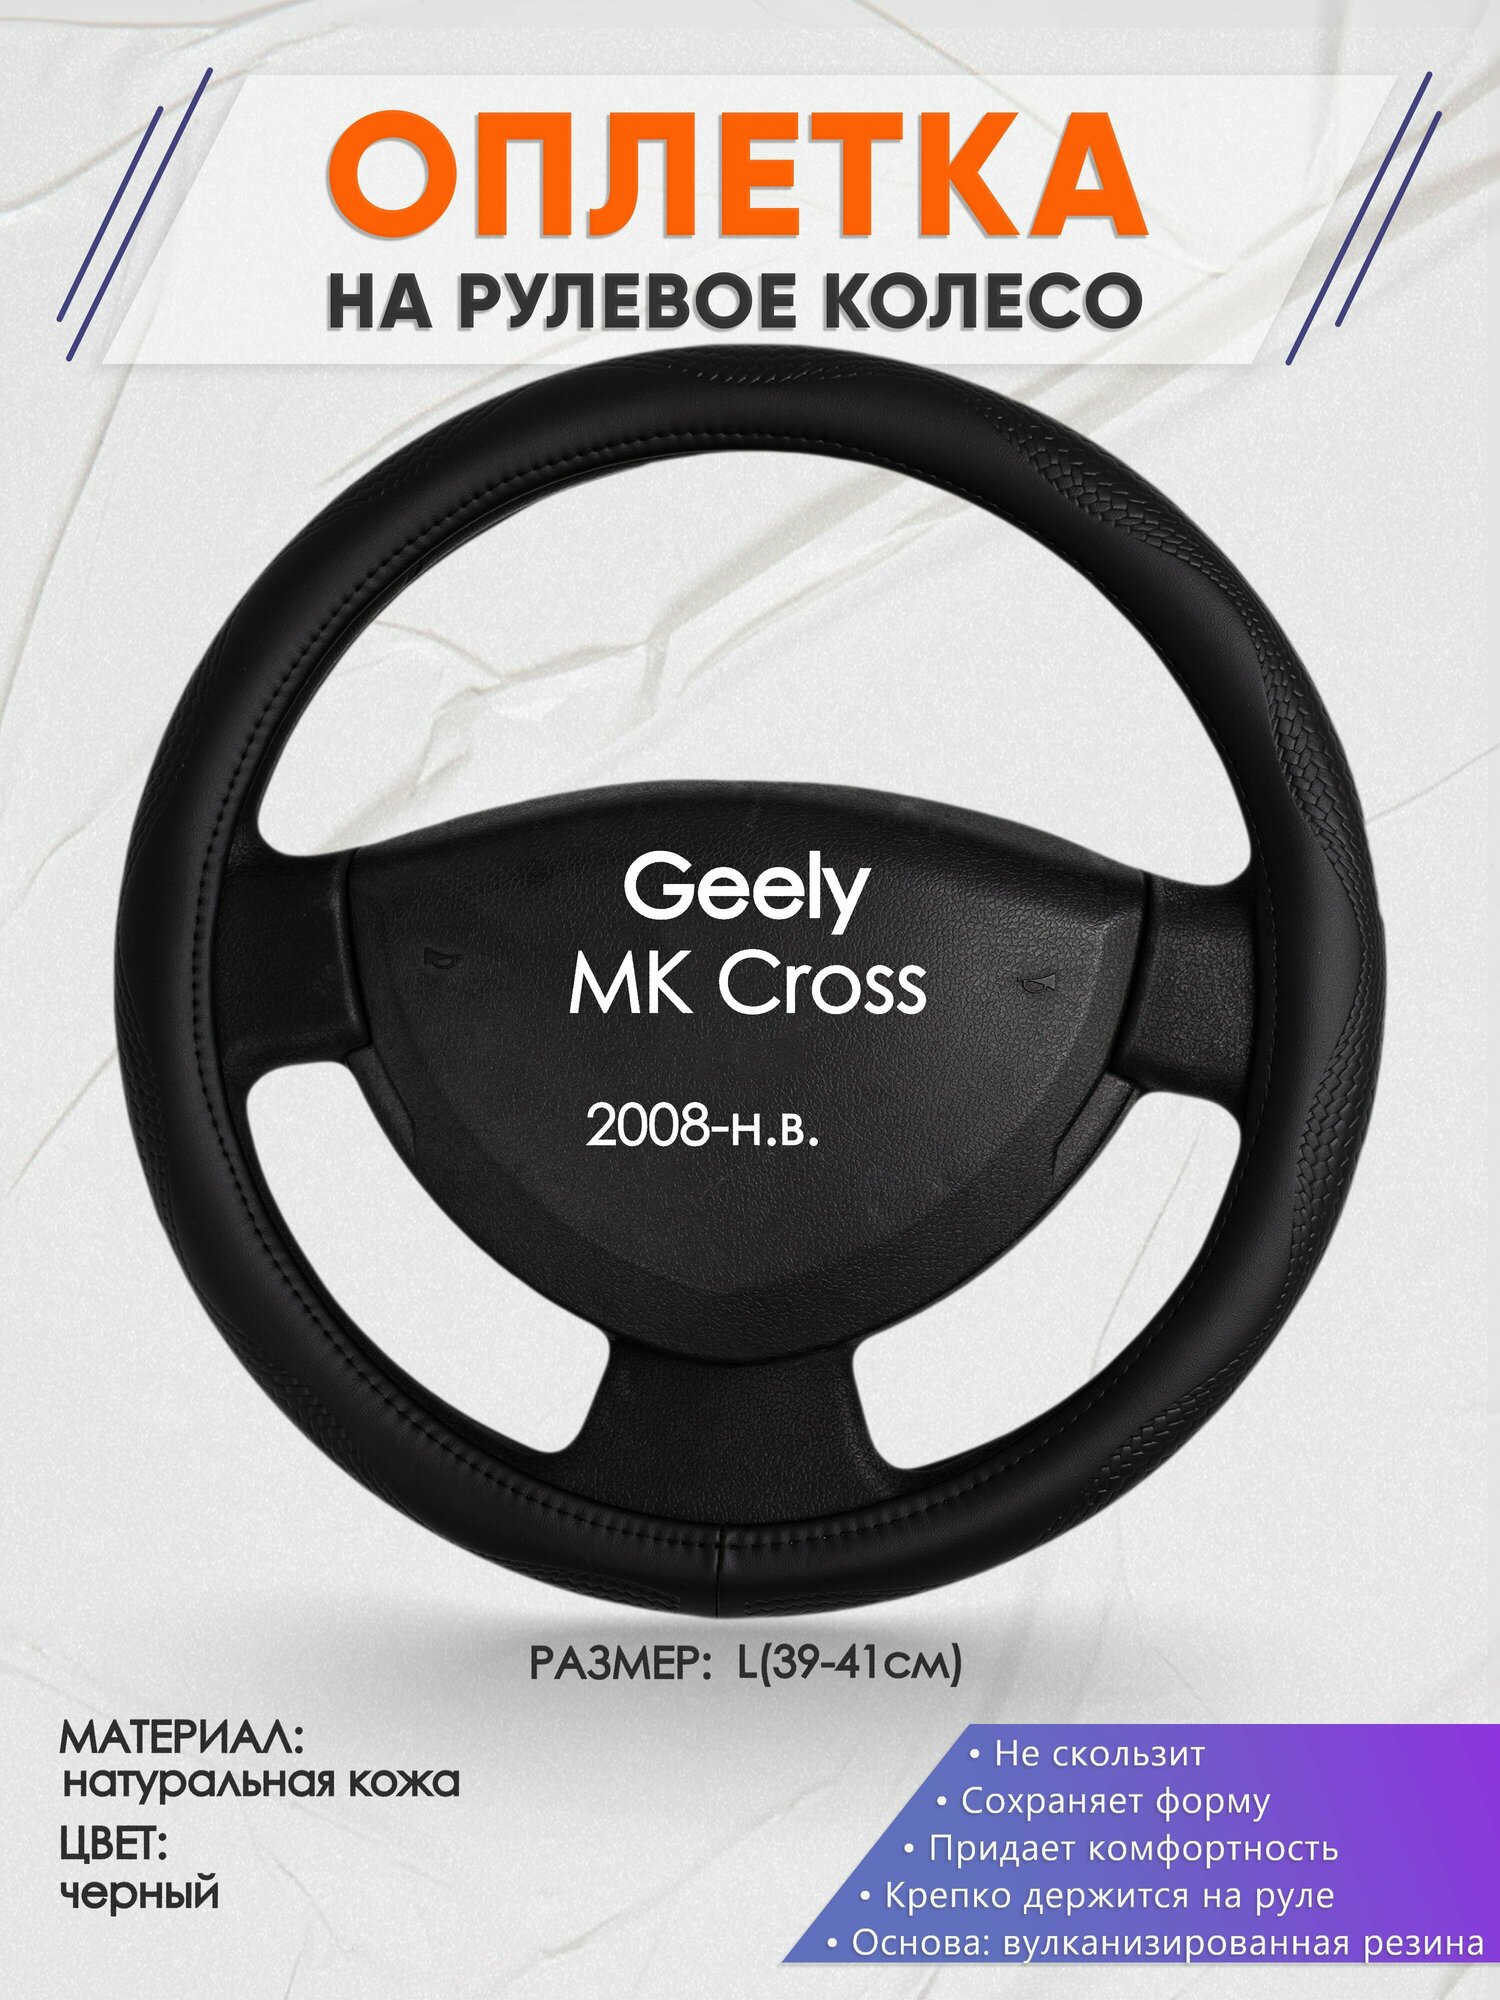 Оплетка на руль для Geely MK Cross(Джили МК кросс) 2008-н. в L(39-41см) Натуральная кожа 88